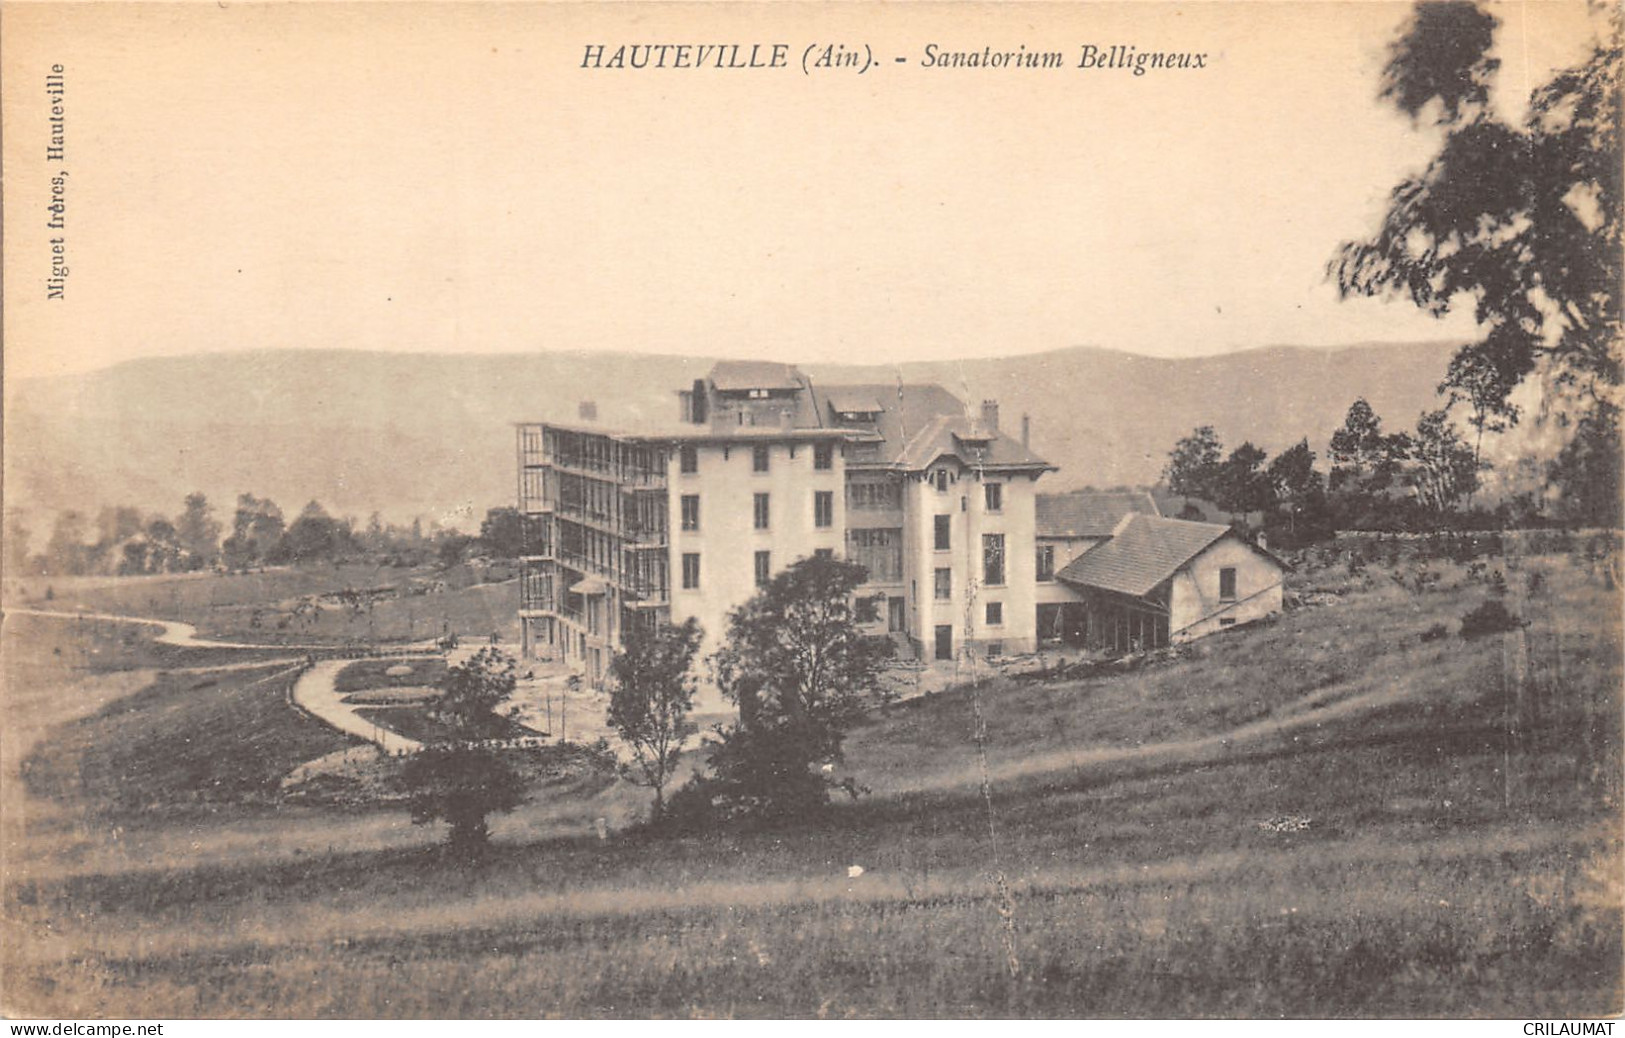 01-HAUTEVILLE-SANATORIUM BELLIGNEUX-N 6013-D/0203 - Hauteville-Lompnes